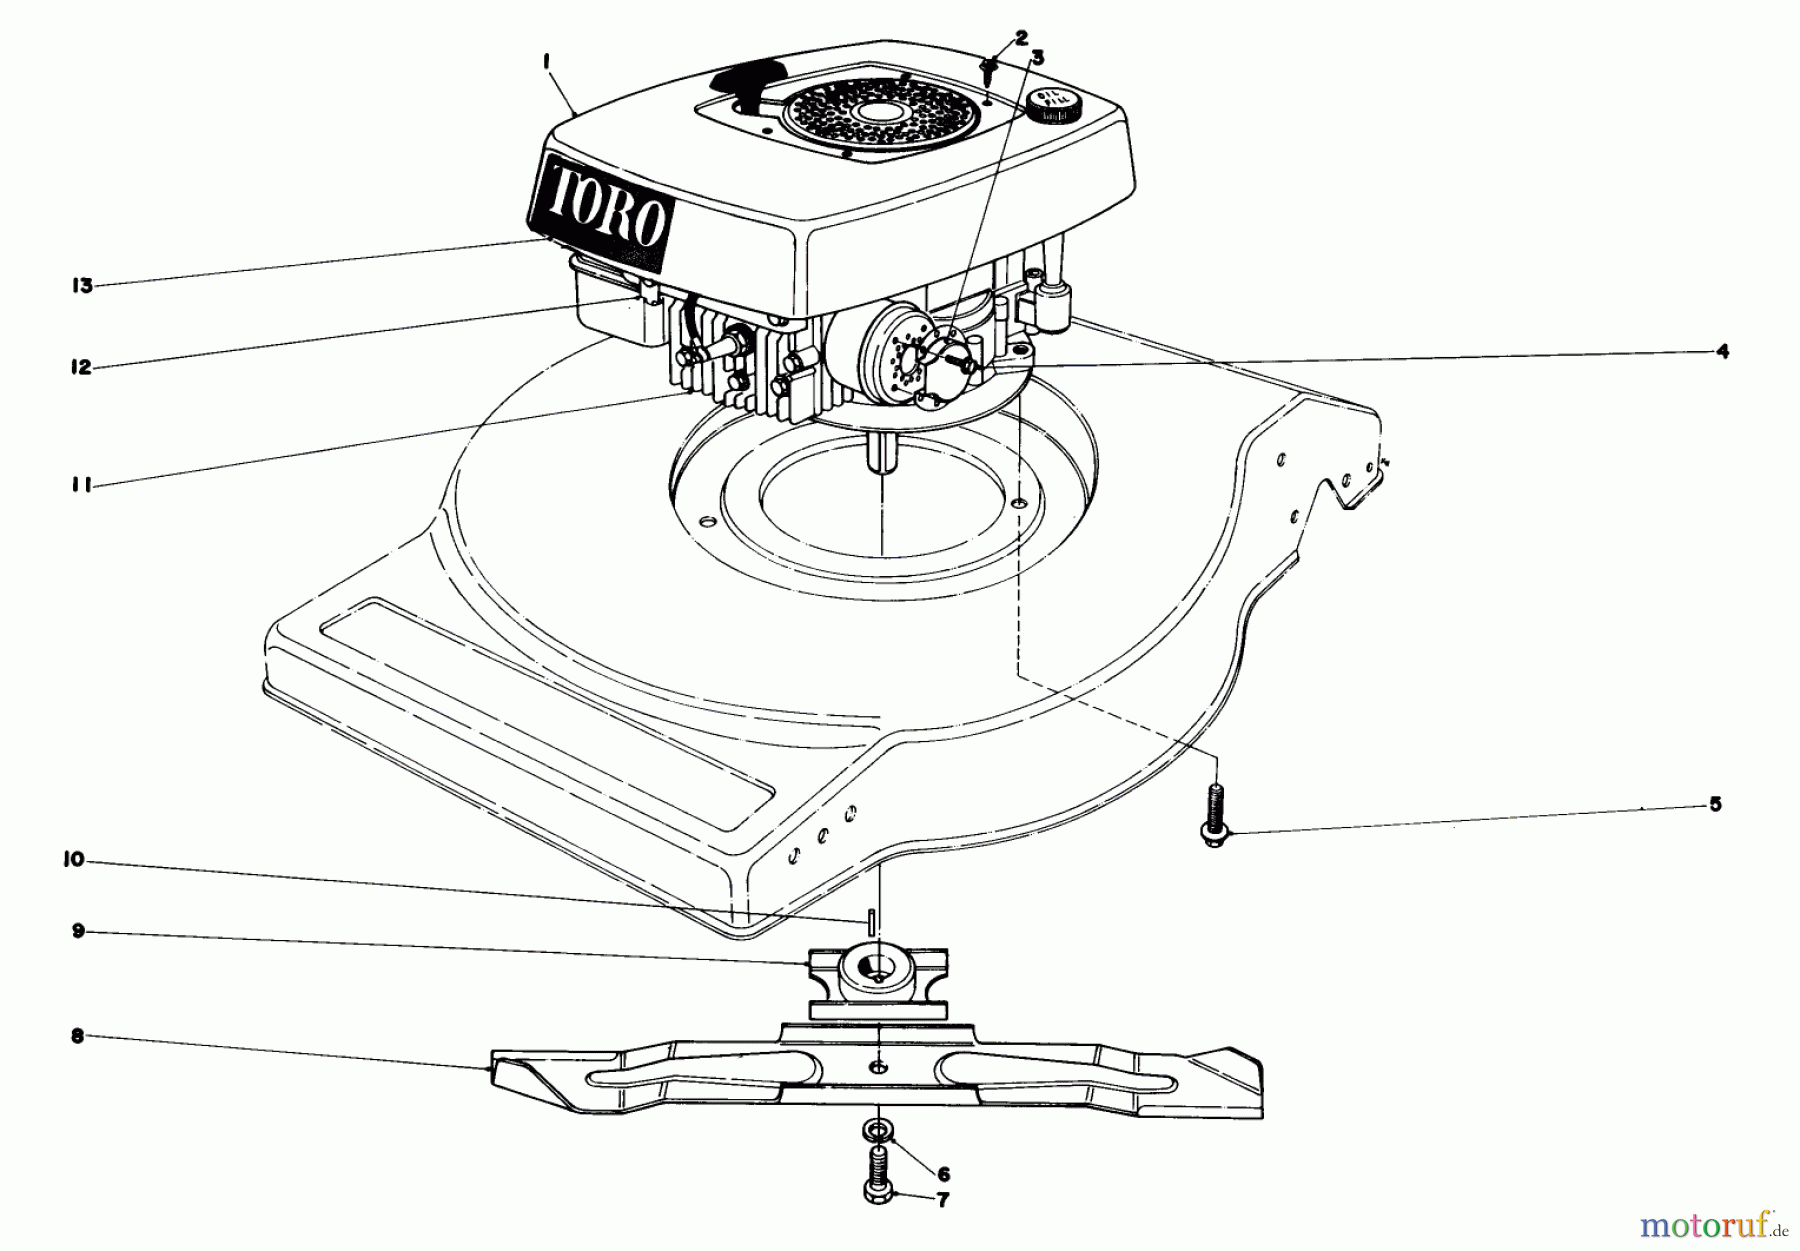  Toro Neu Mowers, Walk-Behind Seite 1 16880 - Toro Lawnmower, 1982 (2000001-2999999) ENGINE ASSEMBLY (MODEL NO. 16880)